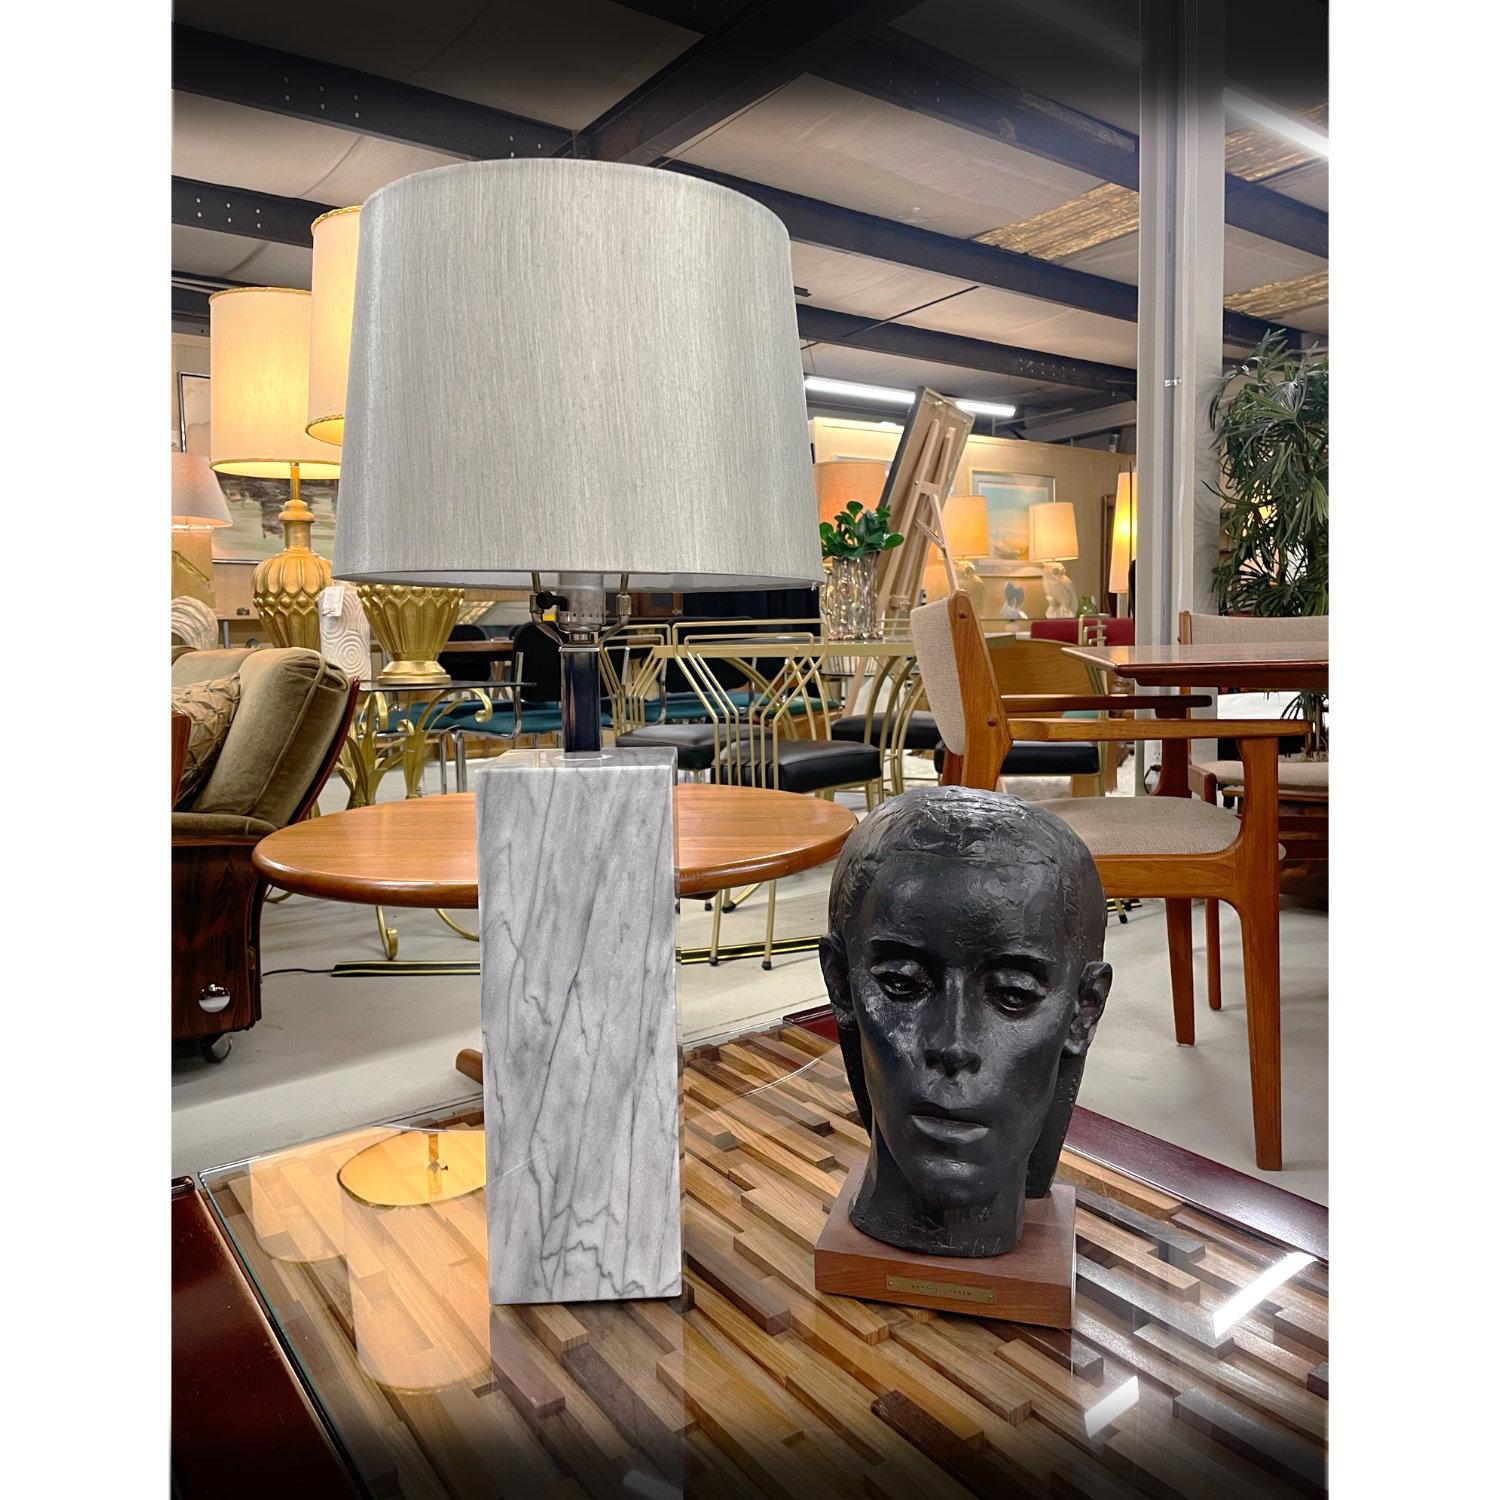 L'abat-jour n'est pas inclus dans l'achat.

Lampe de table chic en marbre gris conçue à la manière de Nessen. La lampe moderne minimaliste est une simple colonne carrée avec un col chromé. Les lampes fonctionnent avec une seule ampoule. Cette lampe